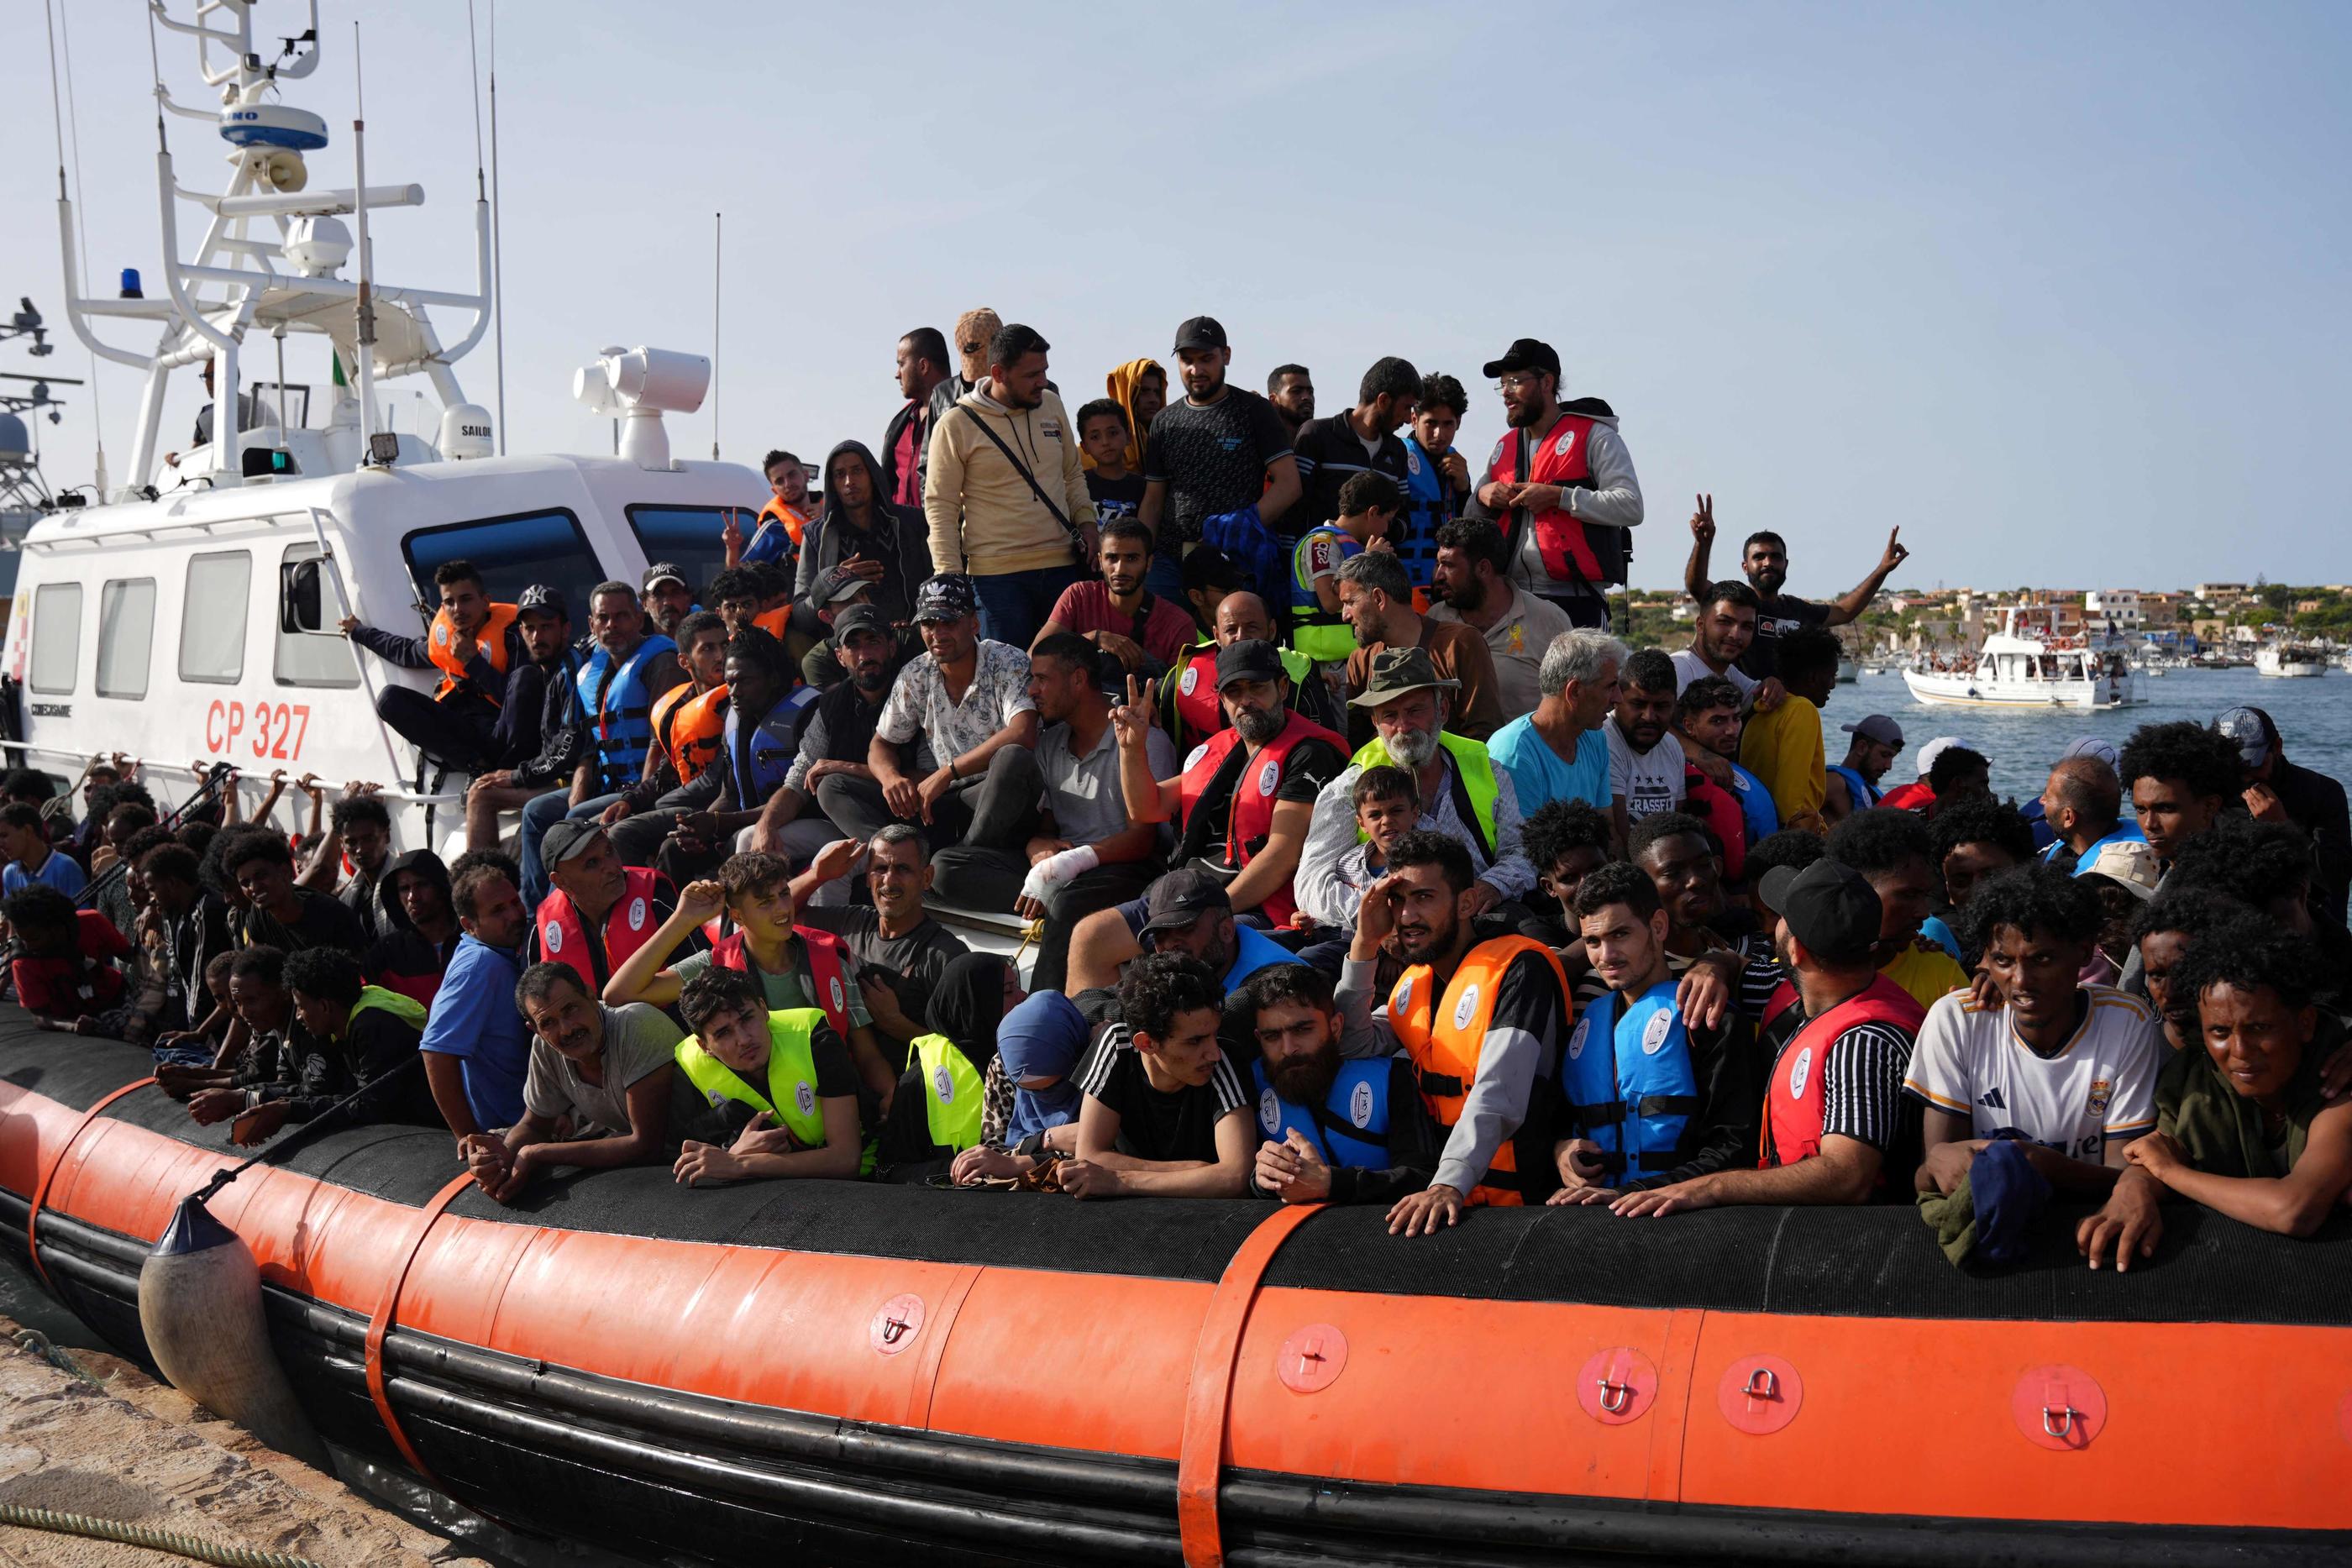 Plus de 12 000 migrants sont arrivés sur les côtes italiennes la semaine dernière, selon le ministère italien de l’Intérieur, dont une écrasante majorité à Lampedusa. AFP/Zakaria ABDELKAFI